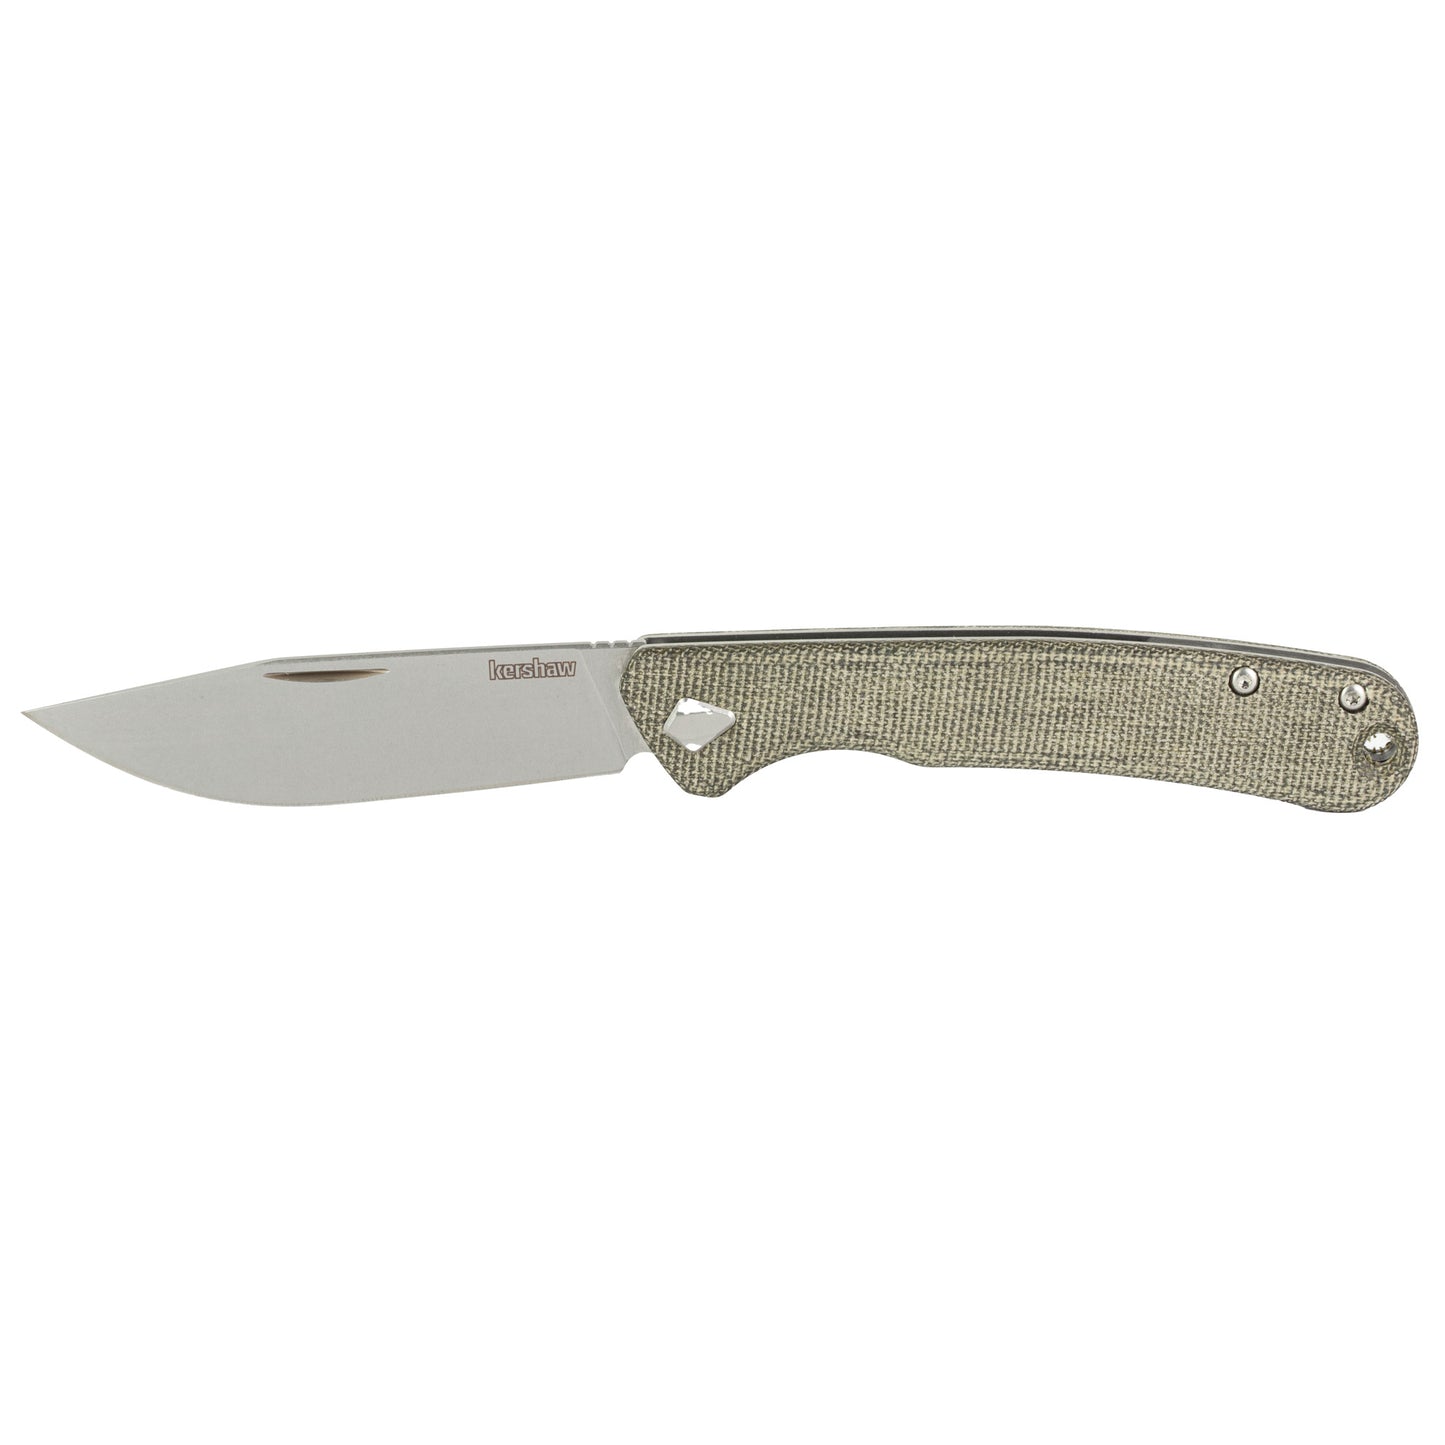 Kershaw Federalist Folding Knife 3.25" Blade Clip Point Stonewashed Finish  4320